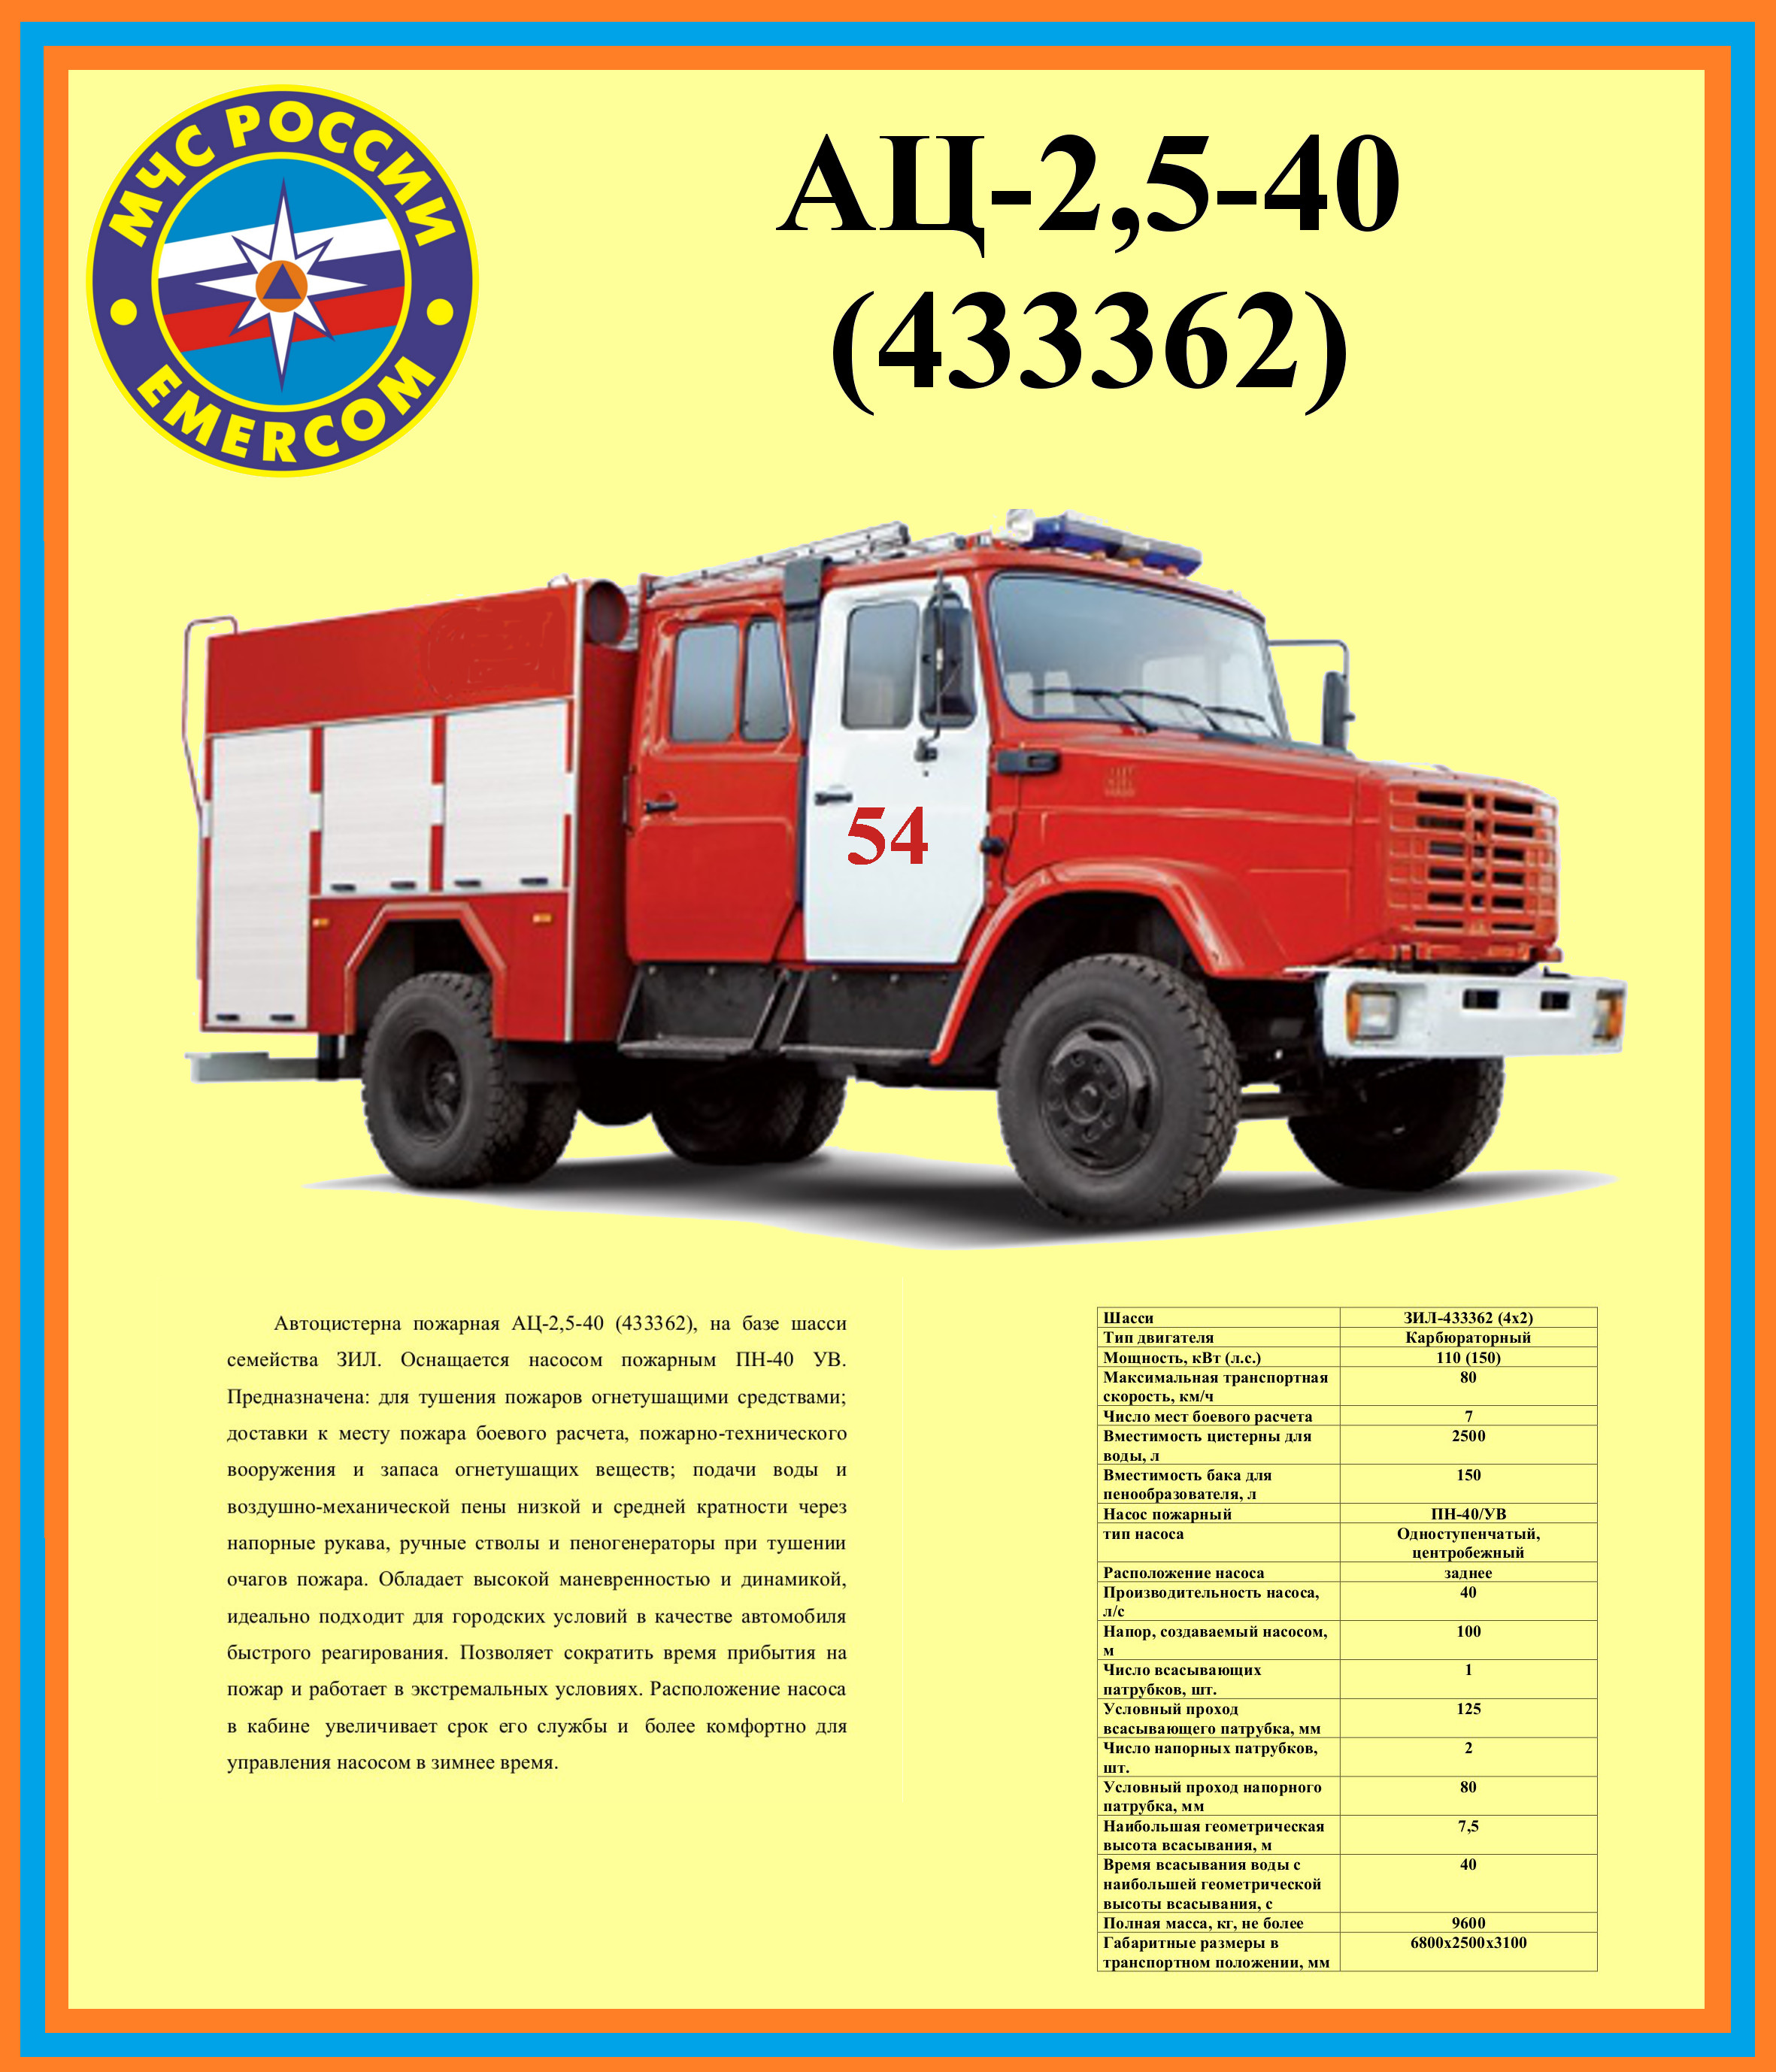 Масса пожарного автомобиля. ТТХ ЗИЛ 130 пожарный. ТТХ ЗИЛ 131 пожарный автомобиль АЦ. ТТХ пожарного автомобиля ЗИЛ-130 ЗИЛ-131. Пожарная машина ЗИЛ 131 технические характеристики.